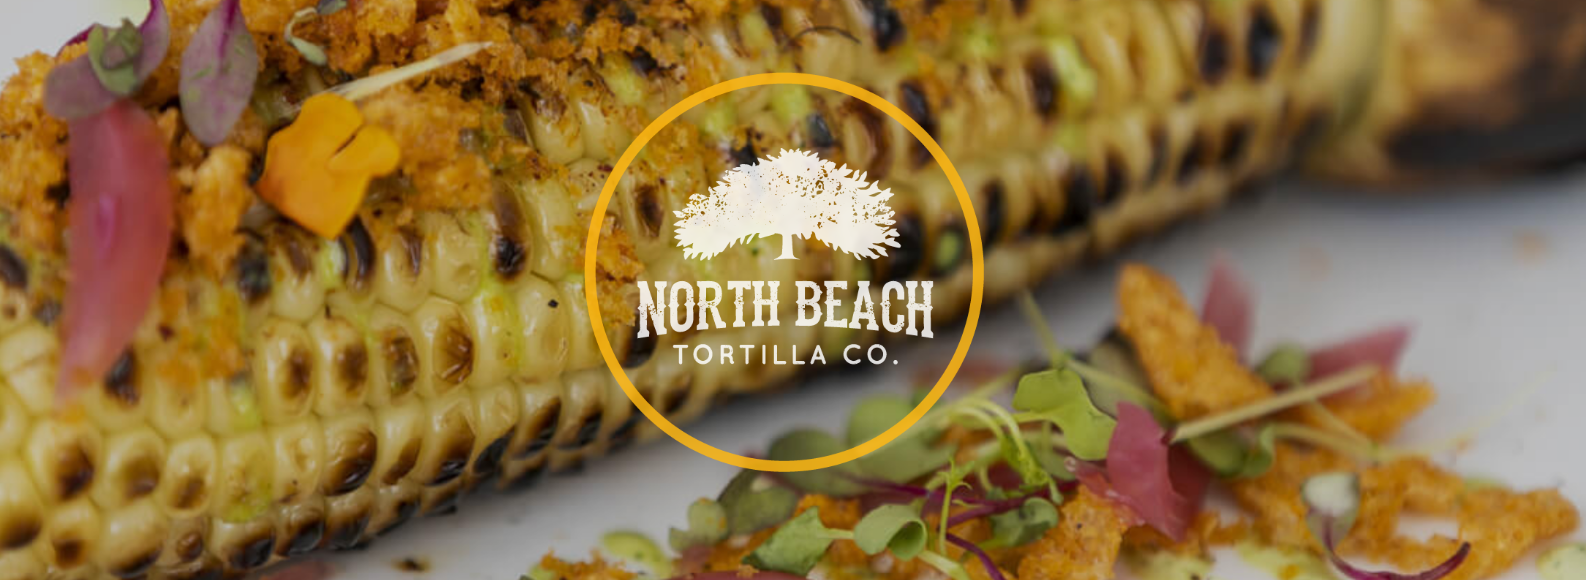 North Beach Tortilla Company